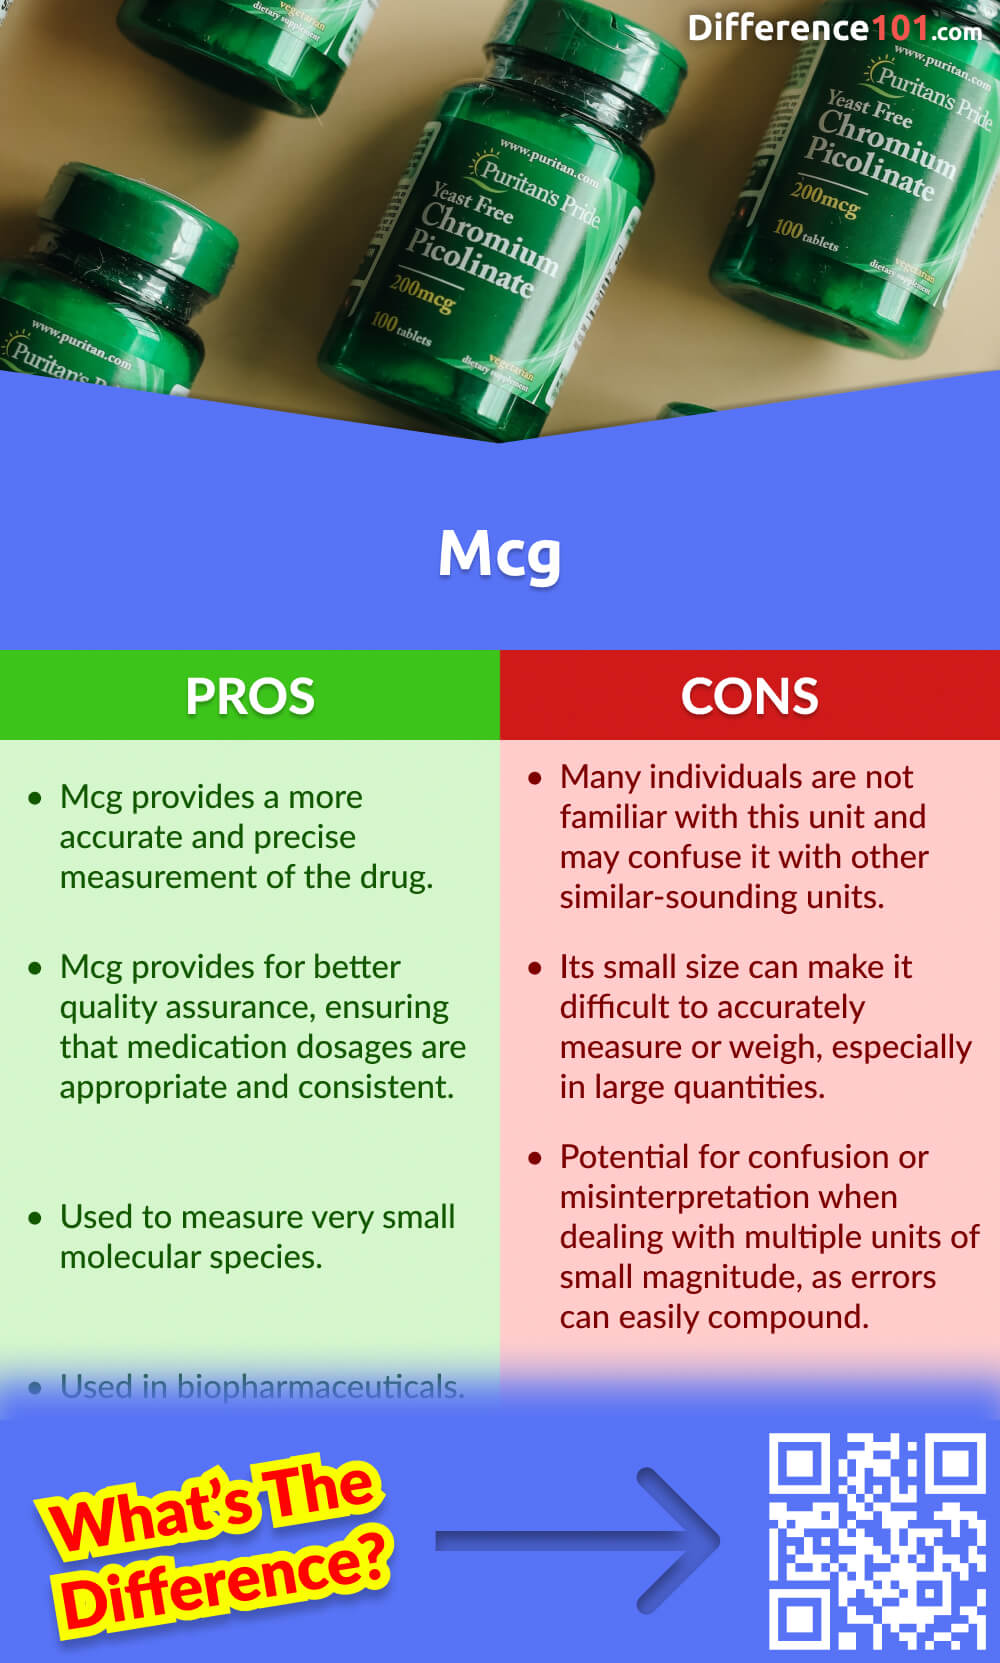 Mcg Pros & Cons